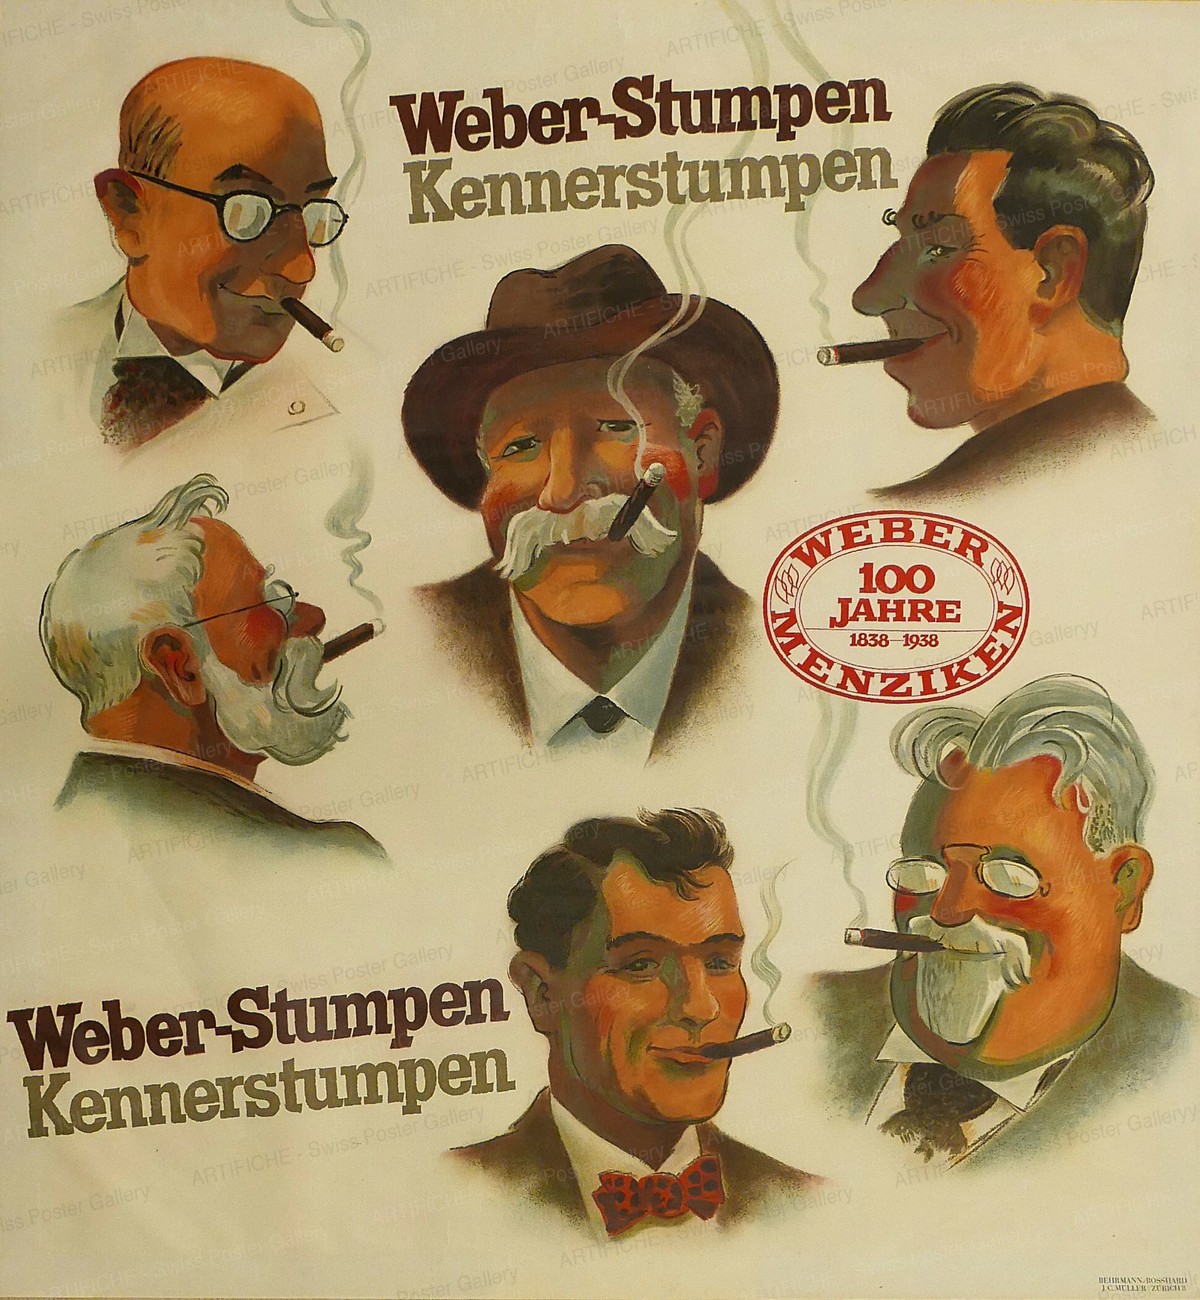 Weber-Stumpen – Kennerstumpen, Laubi, Hugo (Behrmann / Bosshard)